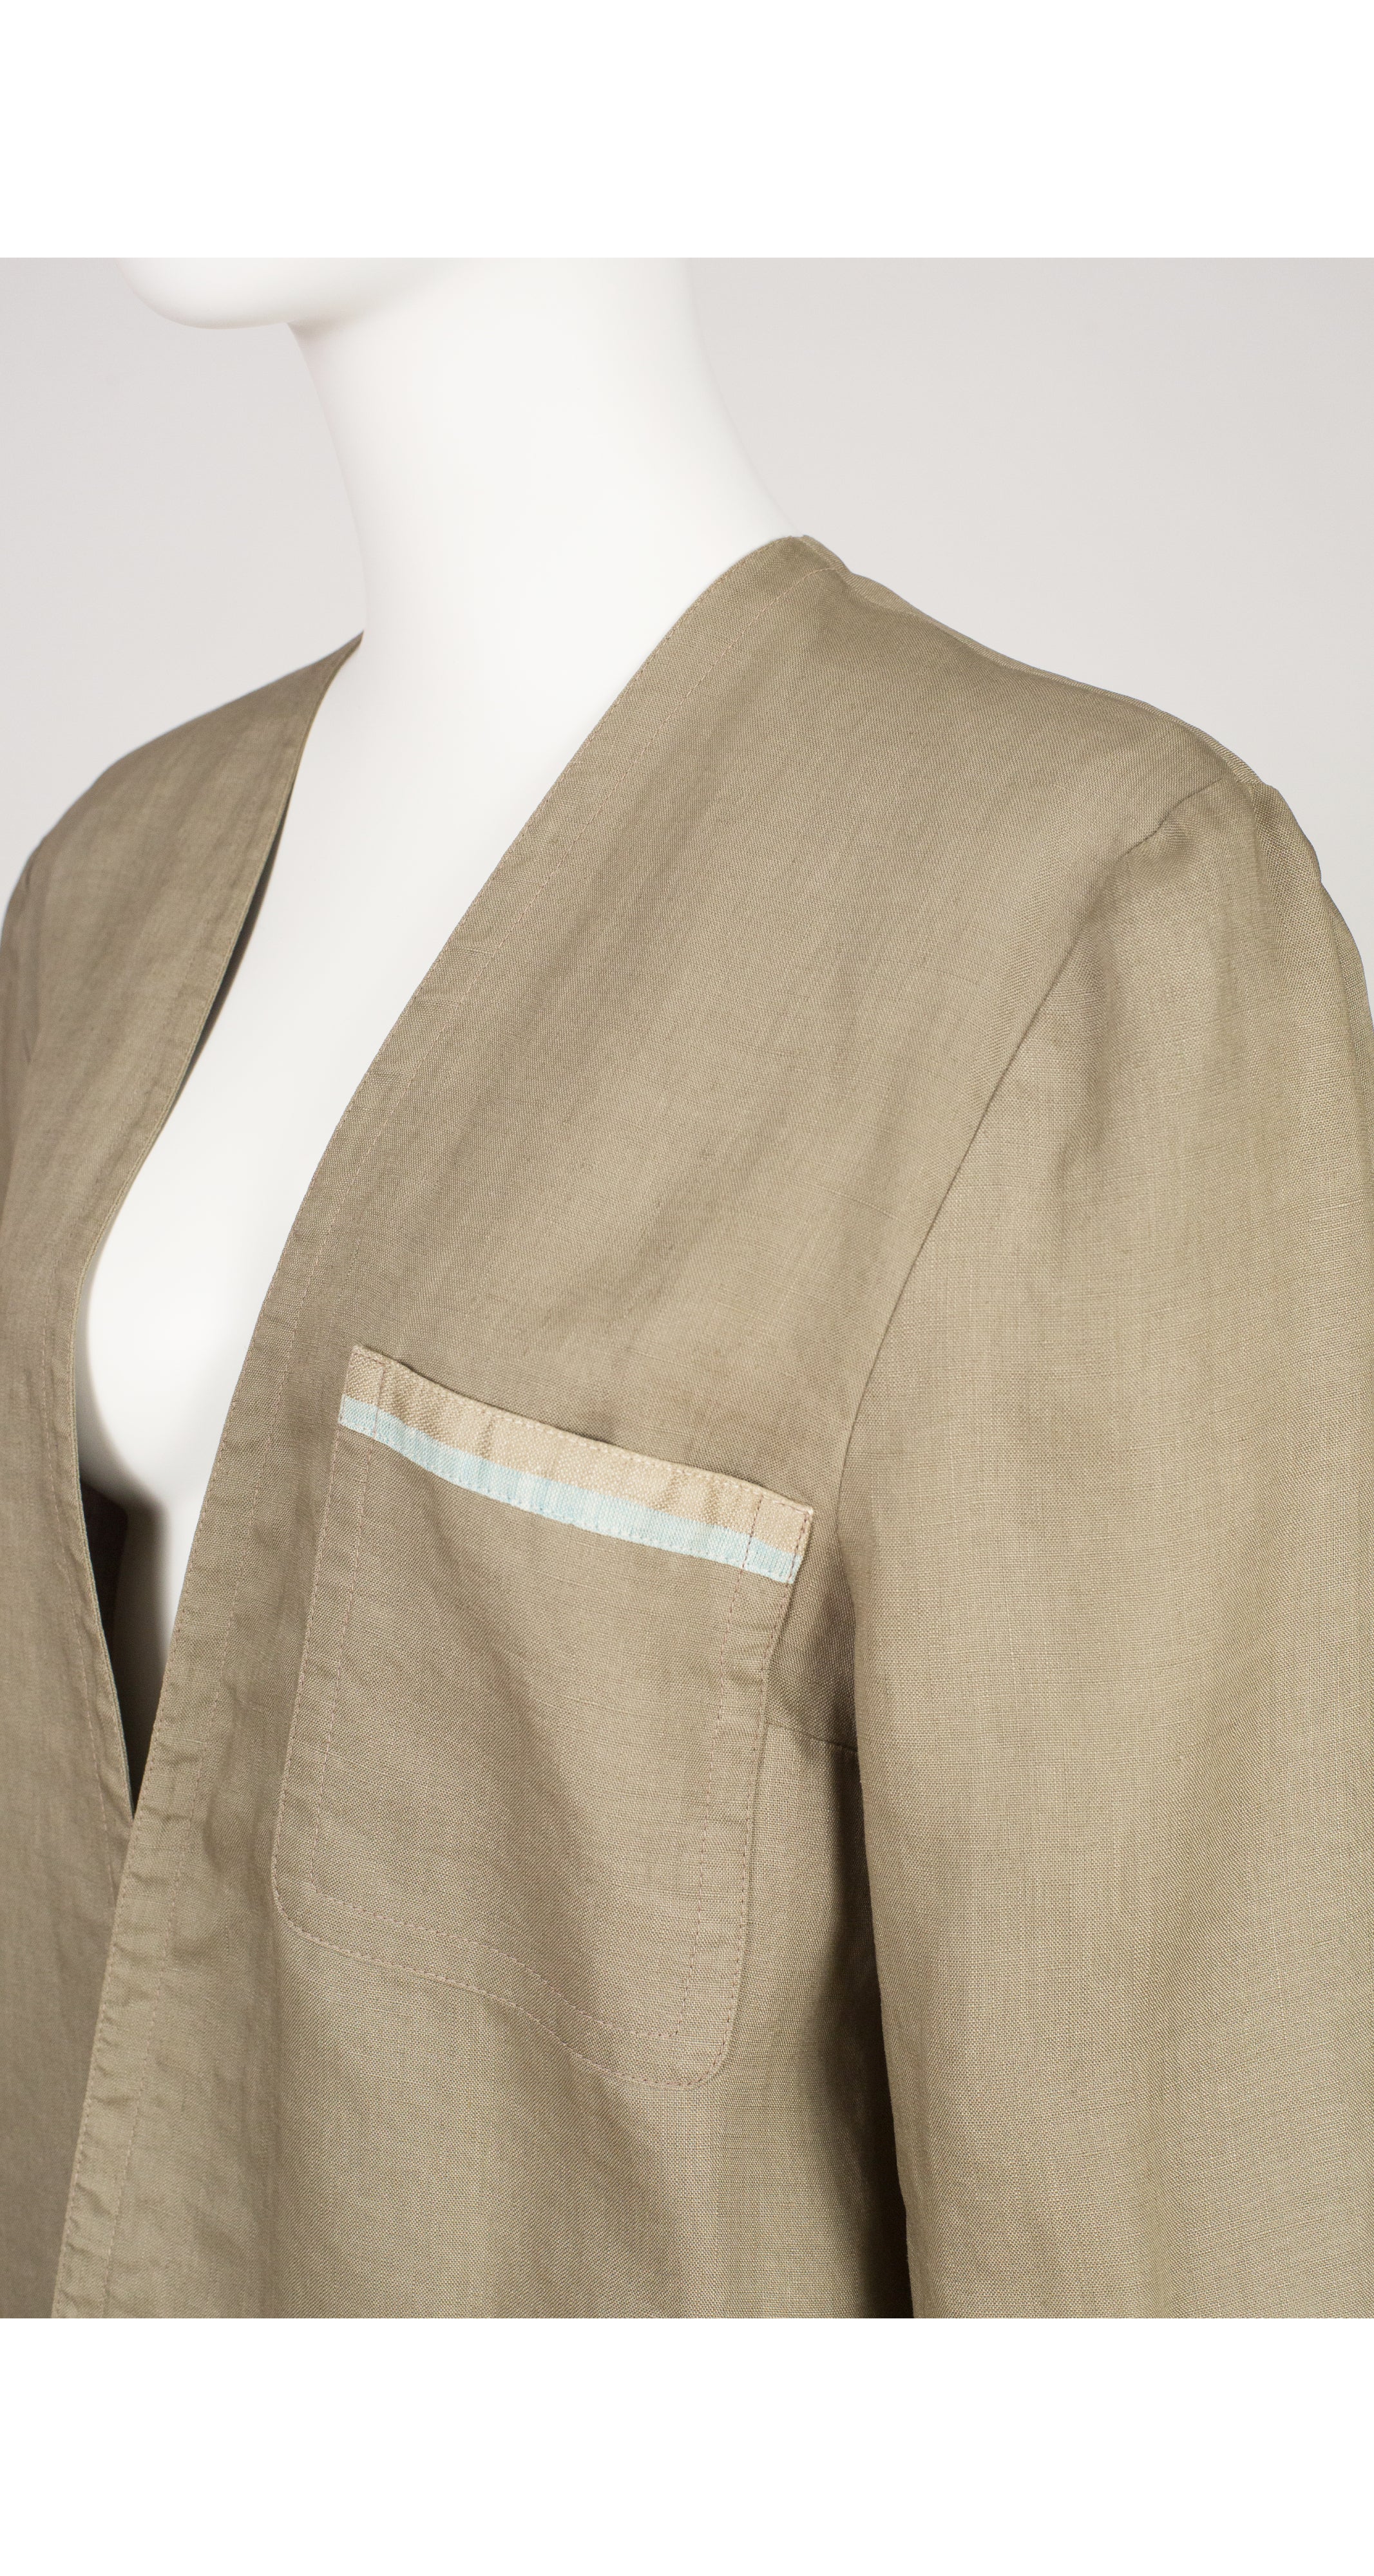 1970s Sage Linen Open-Style Light Jacket